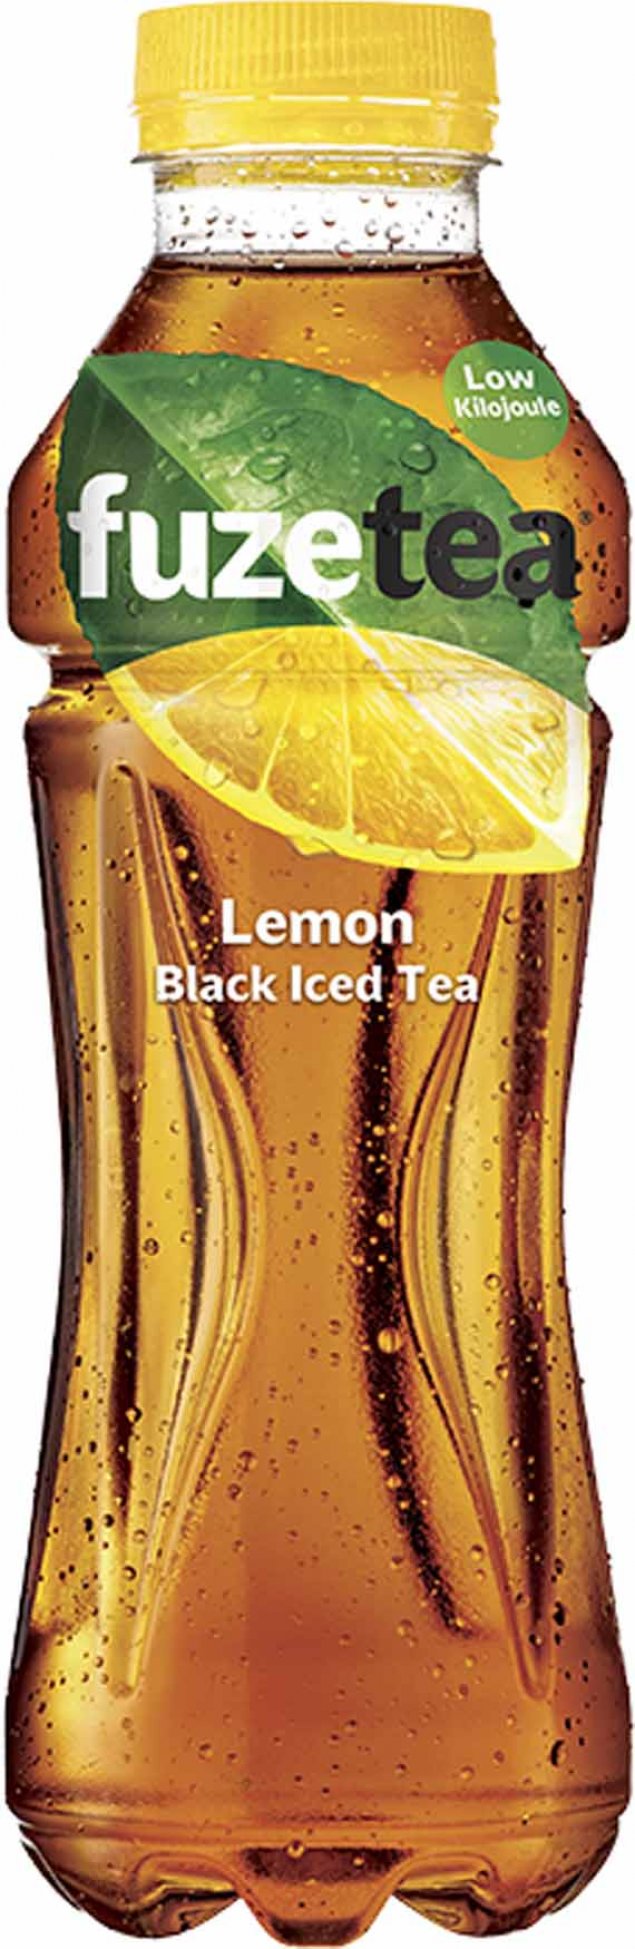 Fuze Tea Lemon Black Iced Tea - 500mL